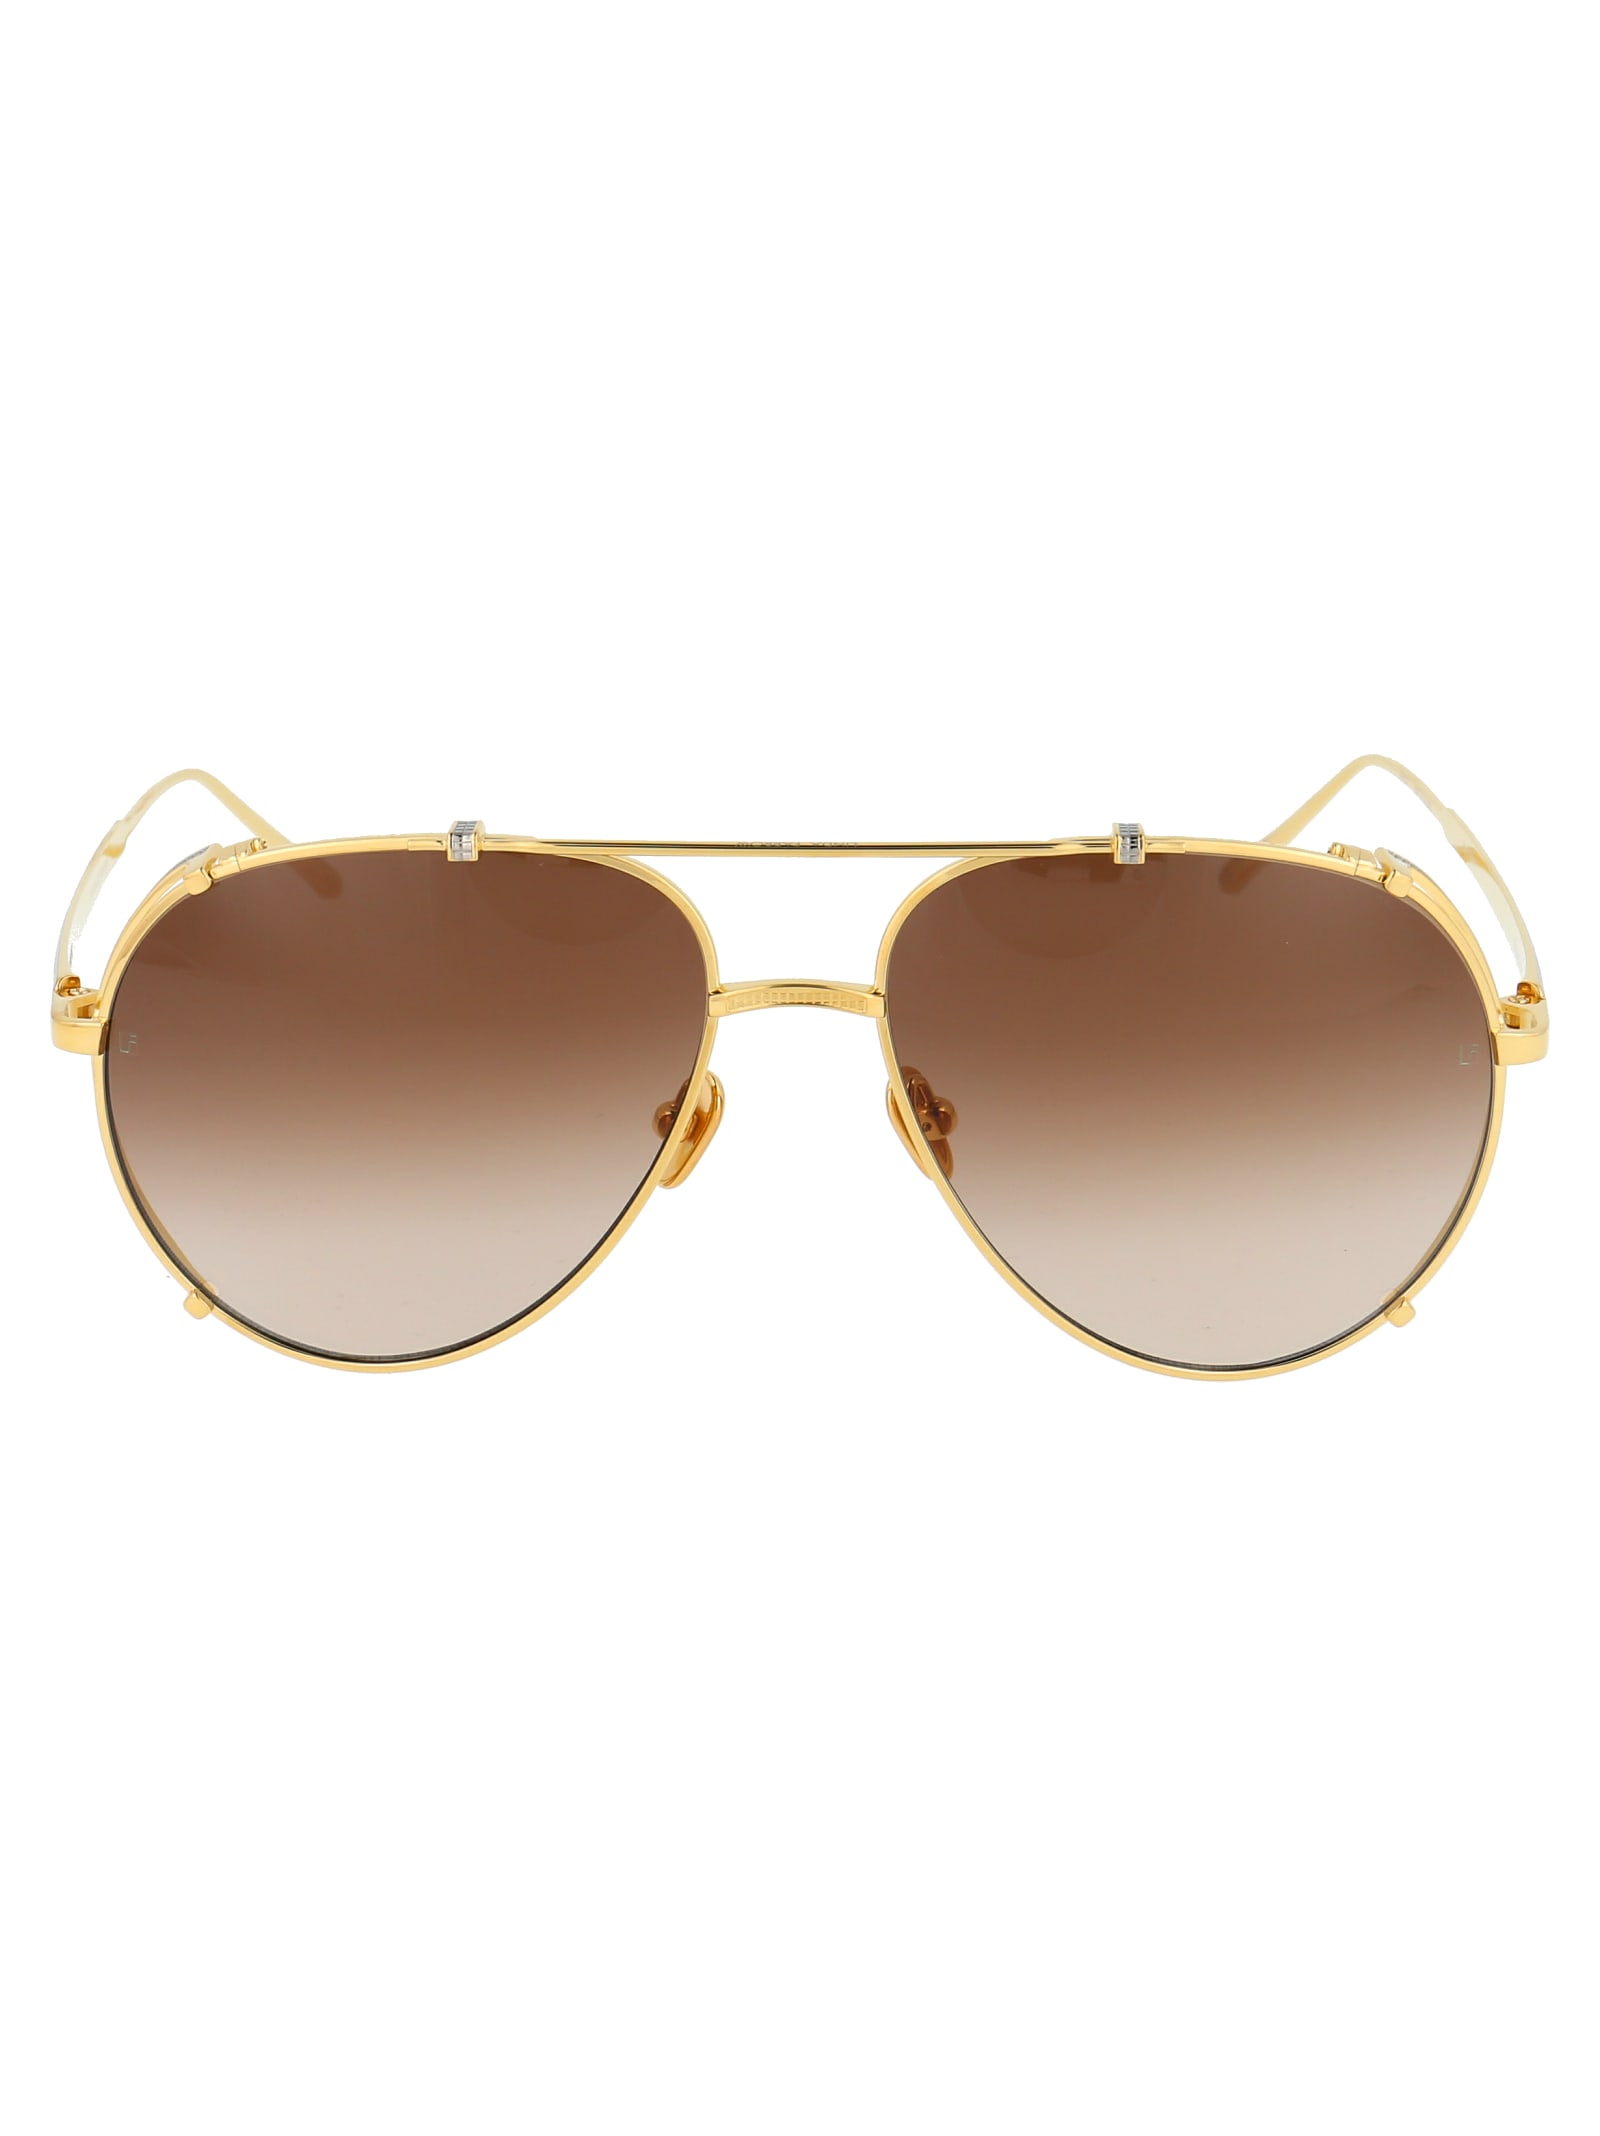 Linda Farrow Newman Sunglasses